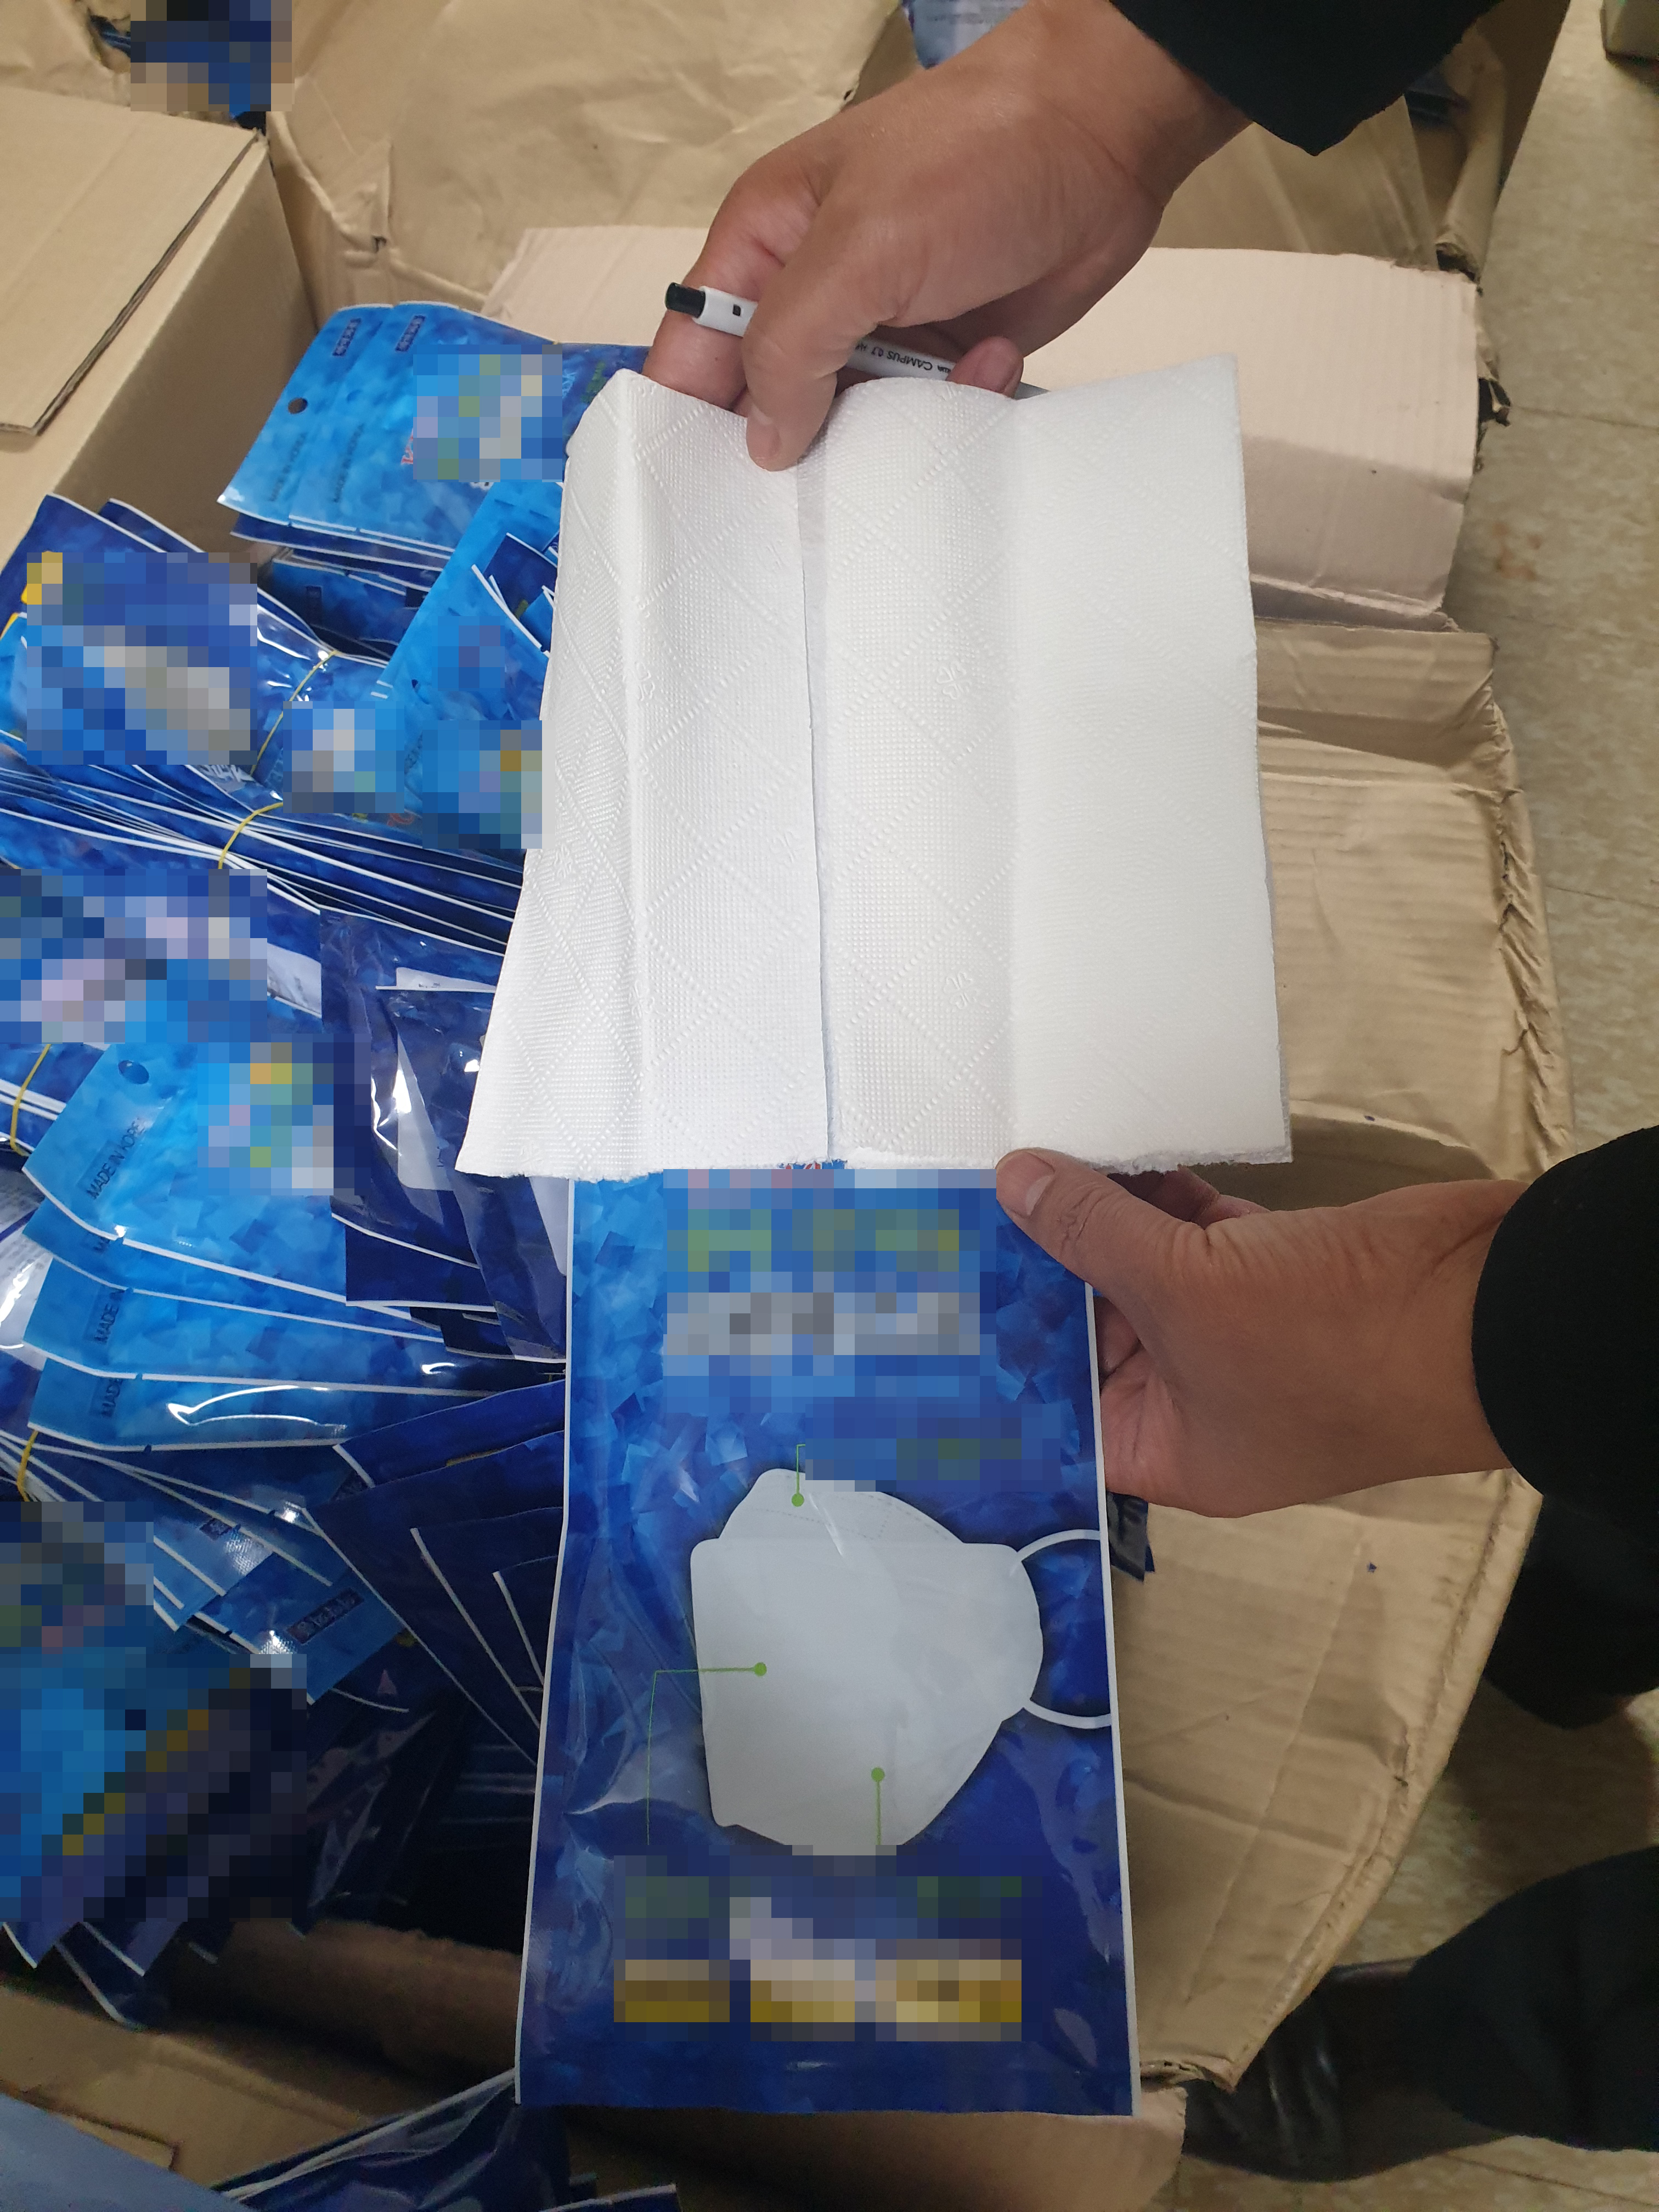 경찰이 압수한 KF94 마스크 포장지에 키친타월을 넣은 가짜마스크. 수원중부경찰서 제공